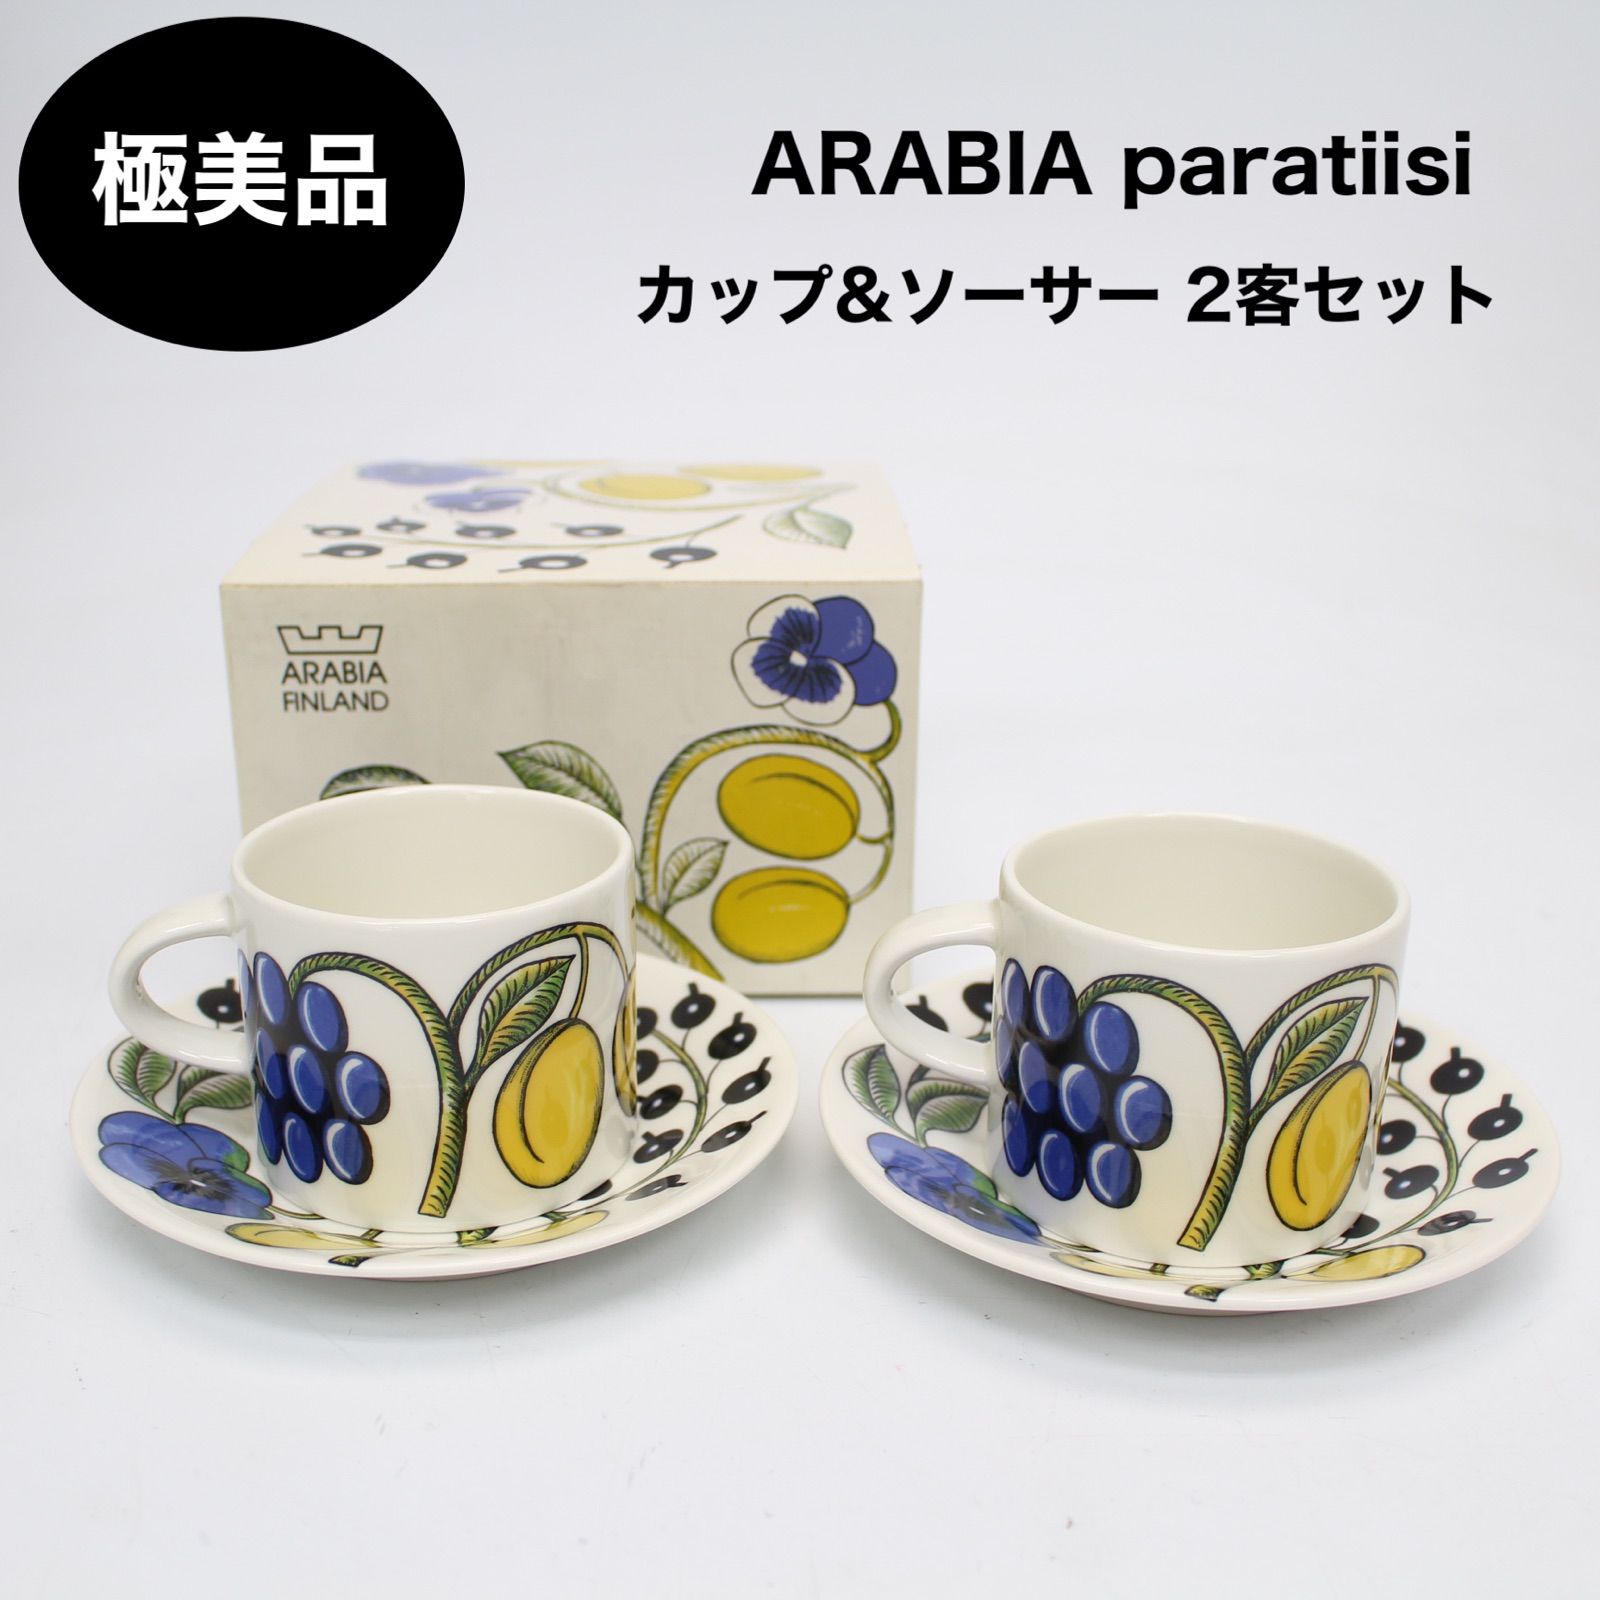 東京都世田谷区にて アラビア カップ&ソーサー Paratiisi  を出張買取させて頂きました。